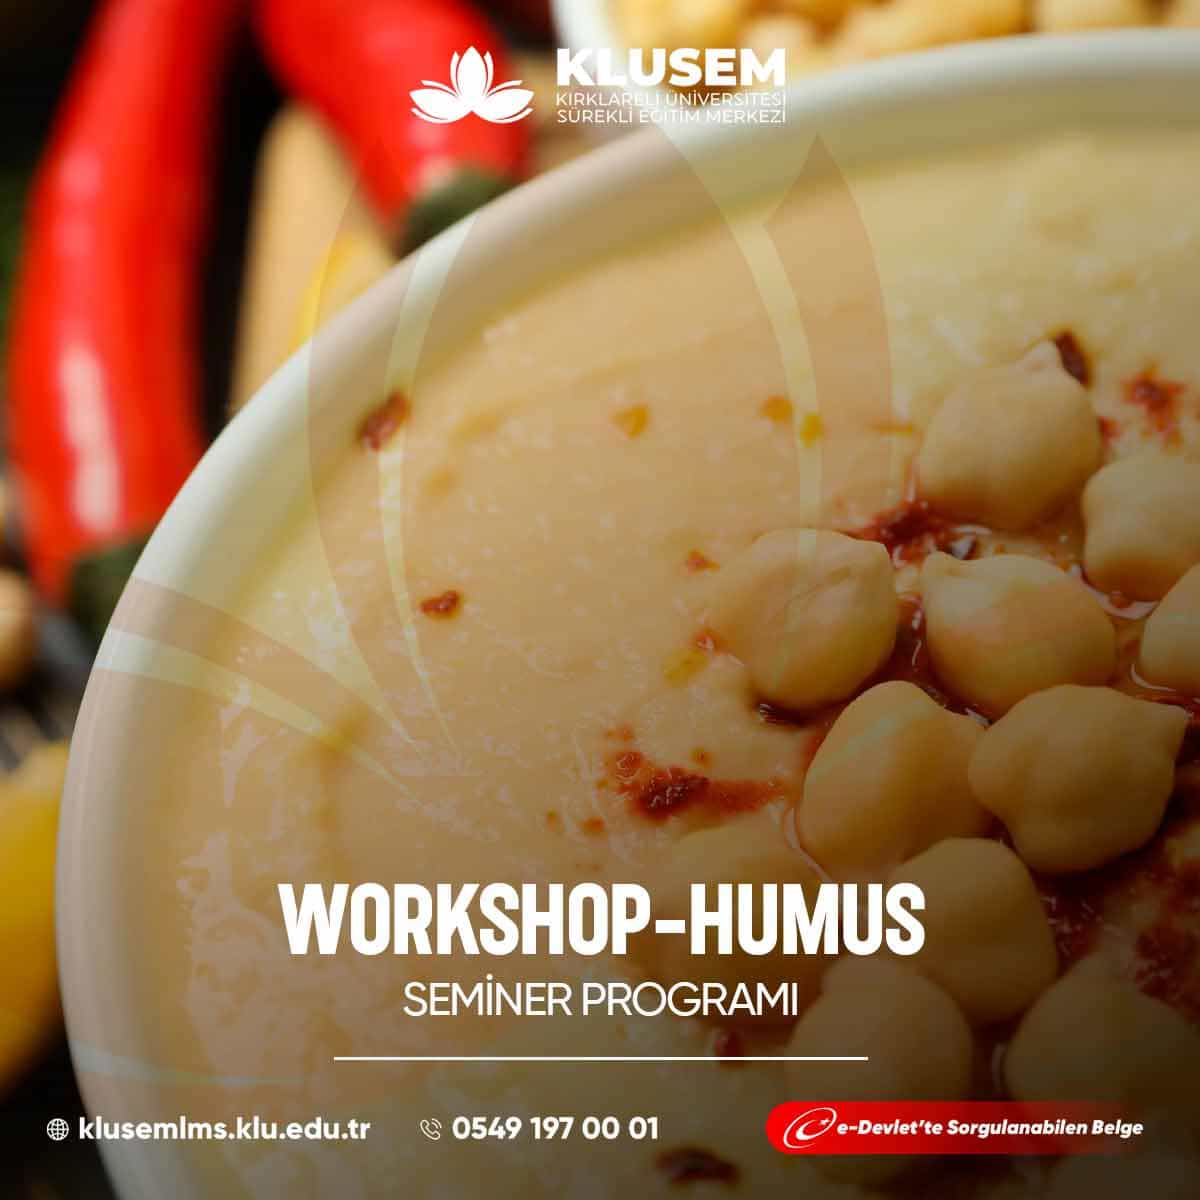 Humus workshopları, Orta Doğu mutfağının vazgeçilmez bir lezzeti olan humusun yapımını öğrenme fırsatı sunar.